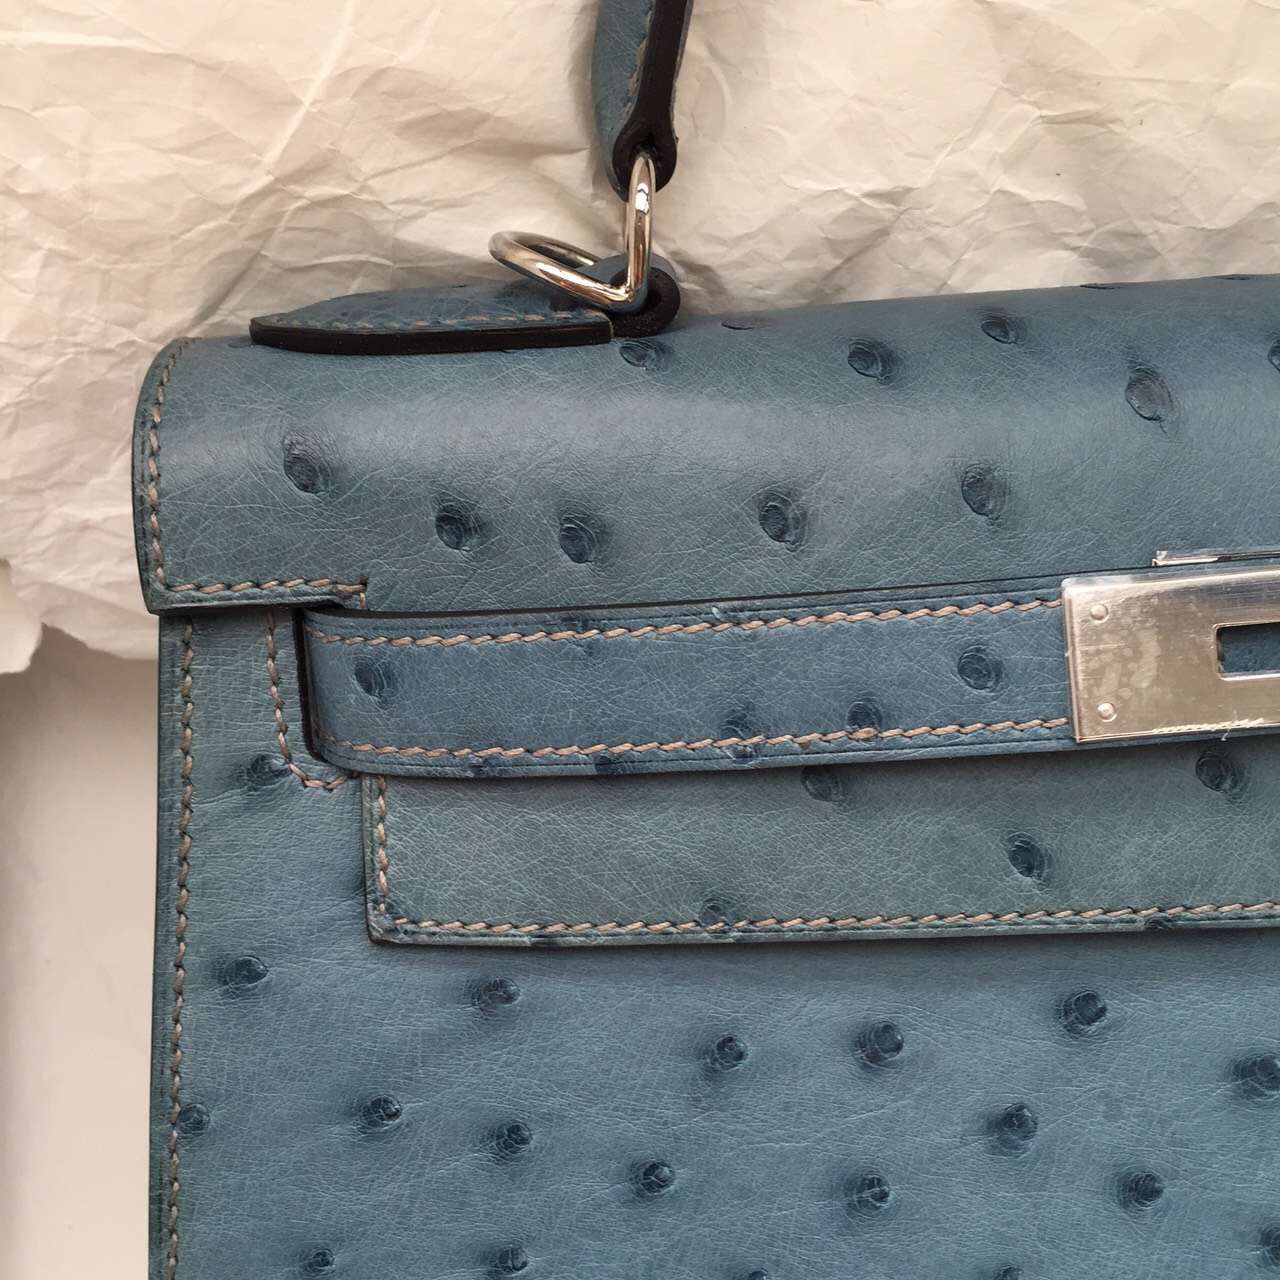 Discount Hermes 7Y Blue Orage Ostrich Leather Kelly28CM Fashion Women&#8217;s Handbag